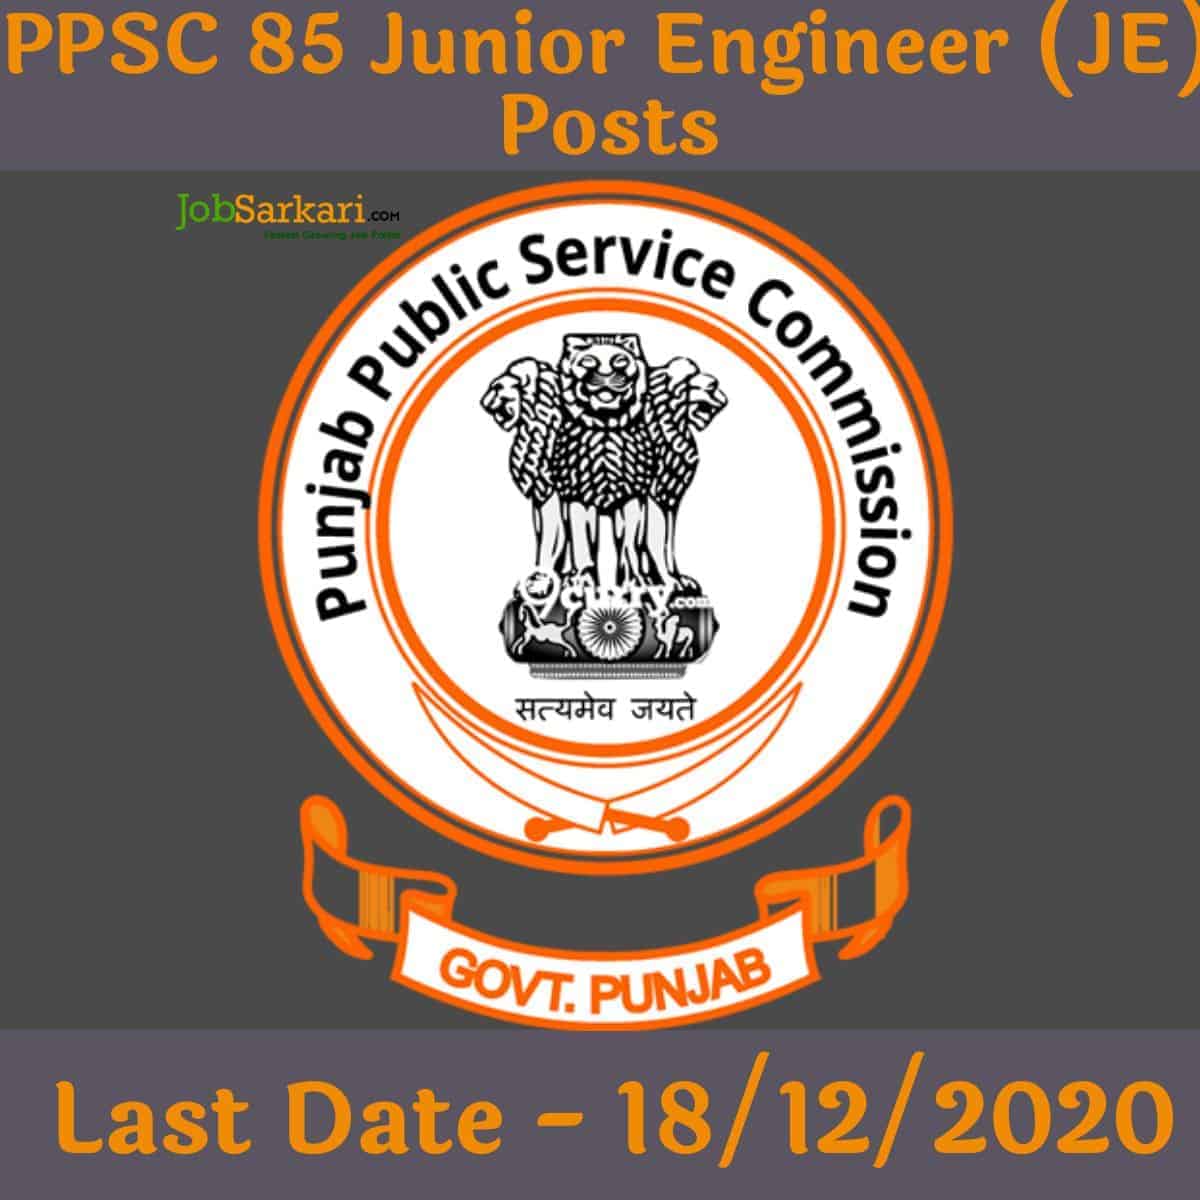 PPSC 85 Junior Engineer (JE) Posts